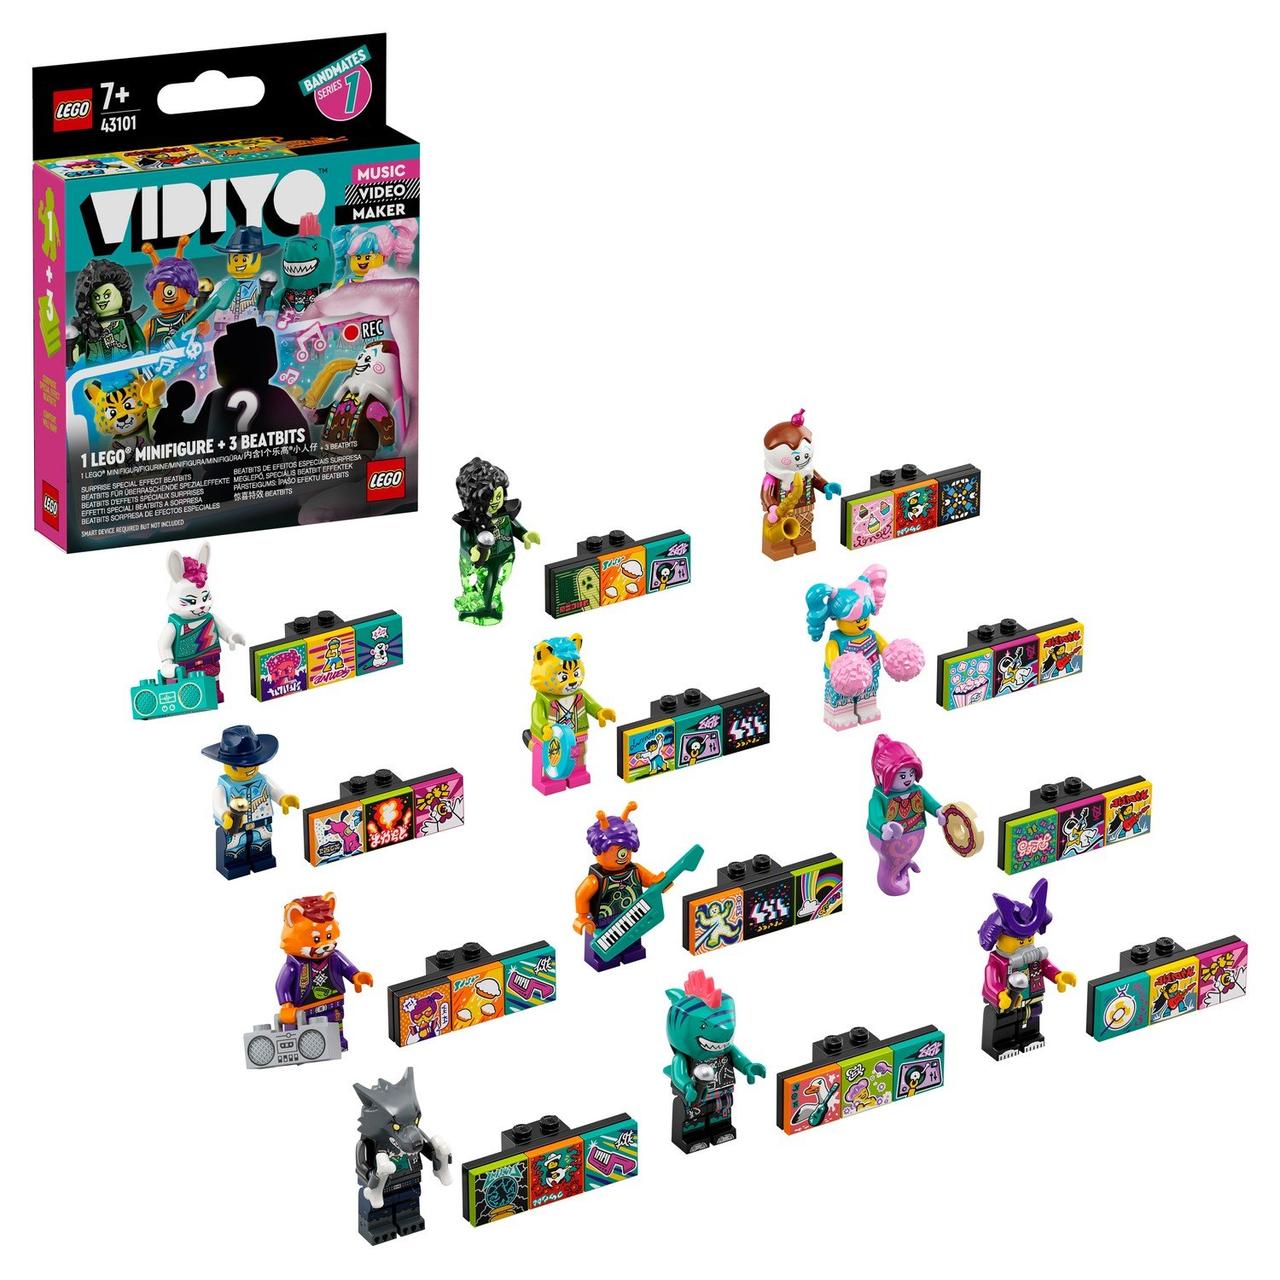 43101 Lego Vidiyo Бэндмейты, Лего ВидиЙо